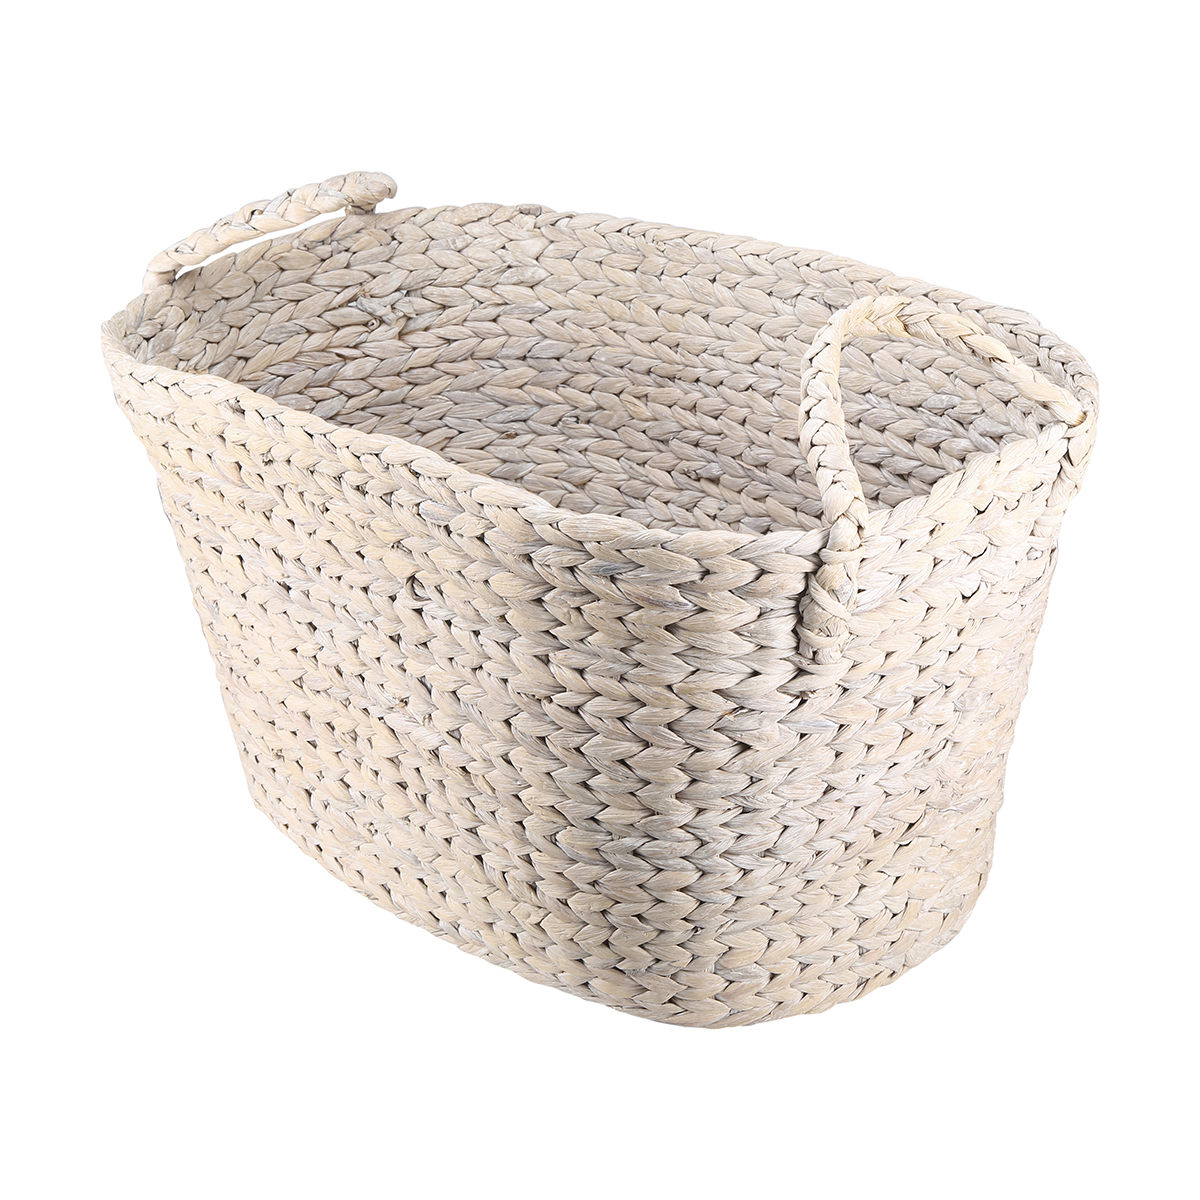 Laundry Basket - White Wash Finish | Kmart